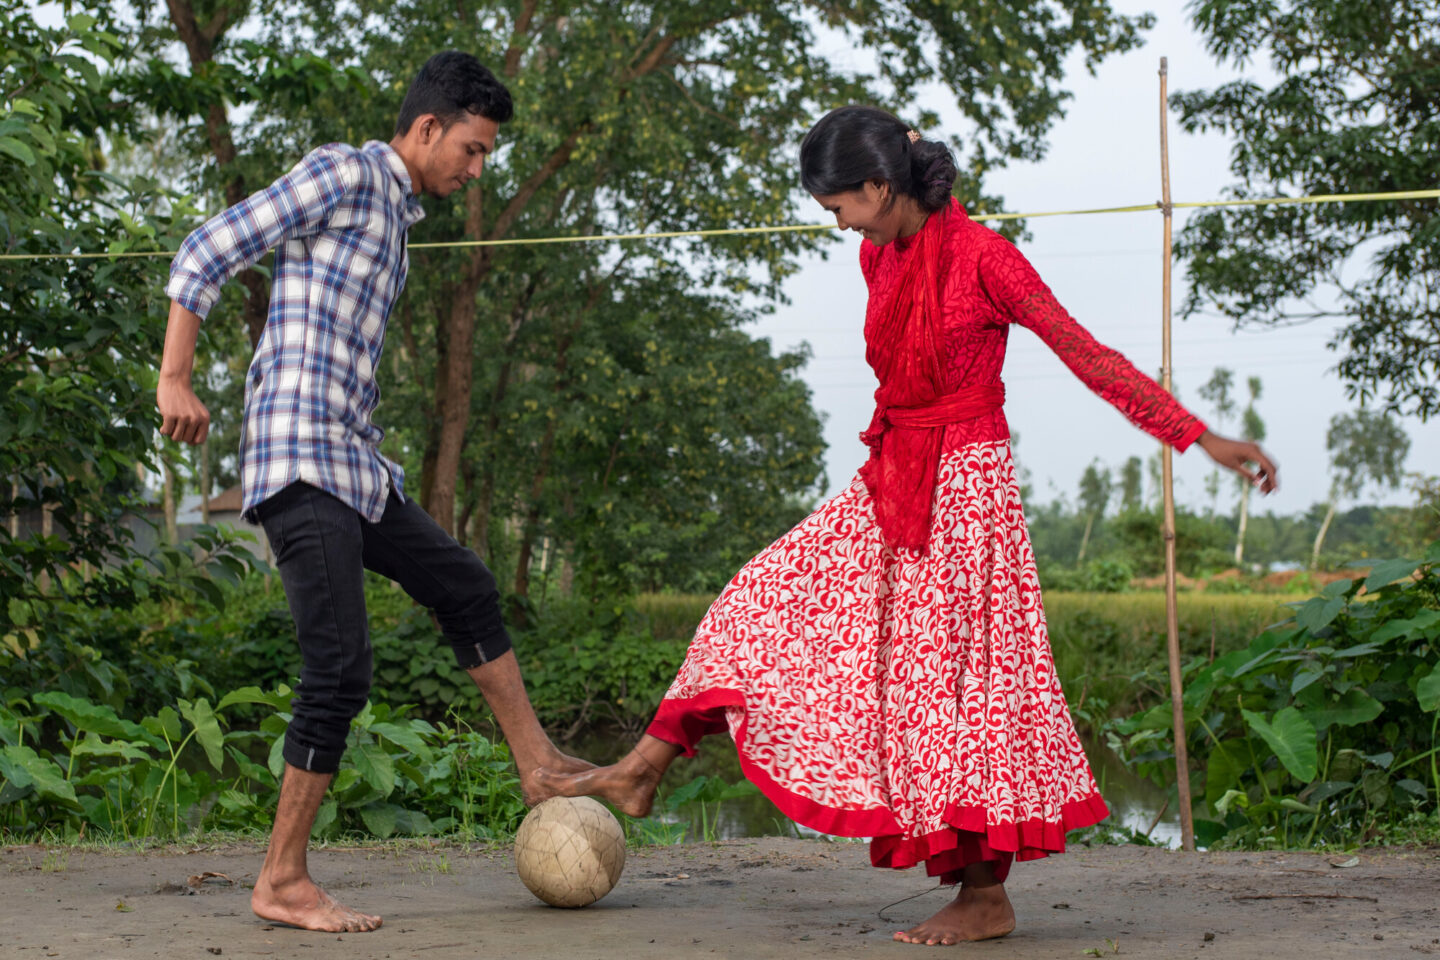 Au Bangladesh, les filles ne sont pas libres. Pas libres de jouer au foot ou d’aller à l’école. Le pays a l’un des taux les plus élevés de mariages forcés. Mais avec CARE, les choses changent.